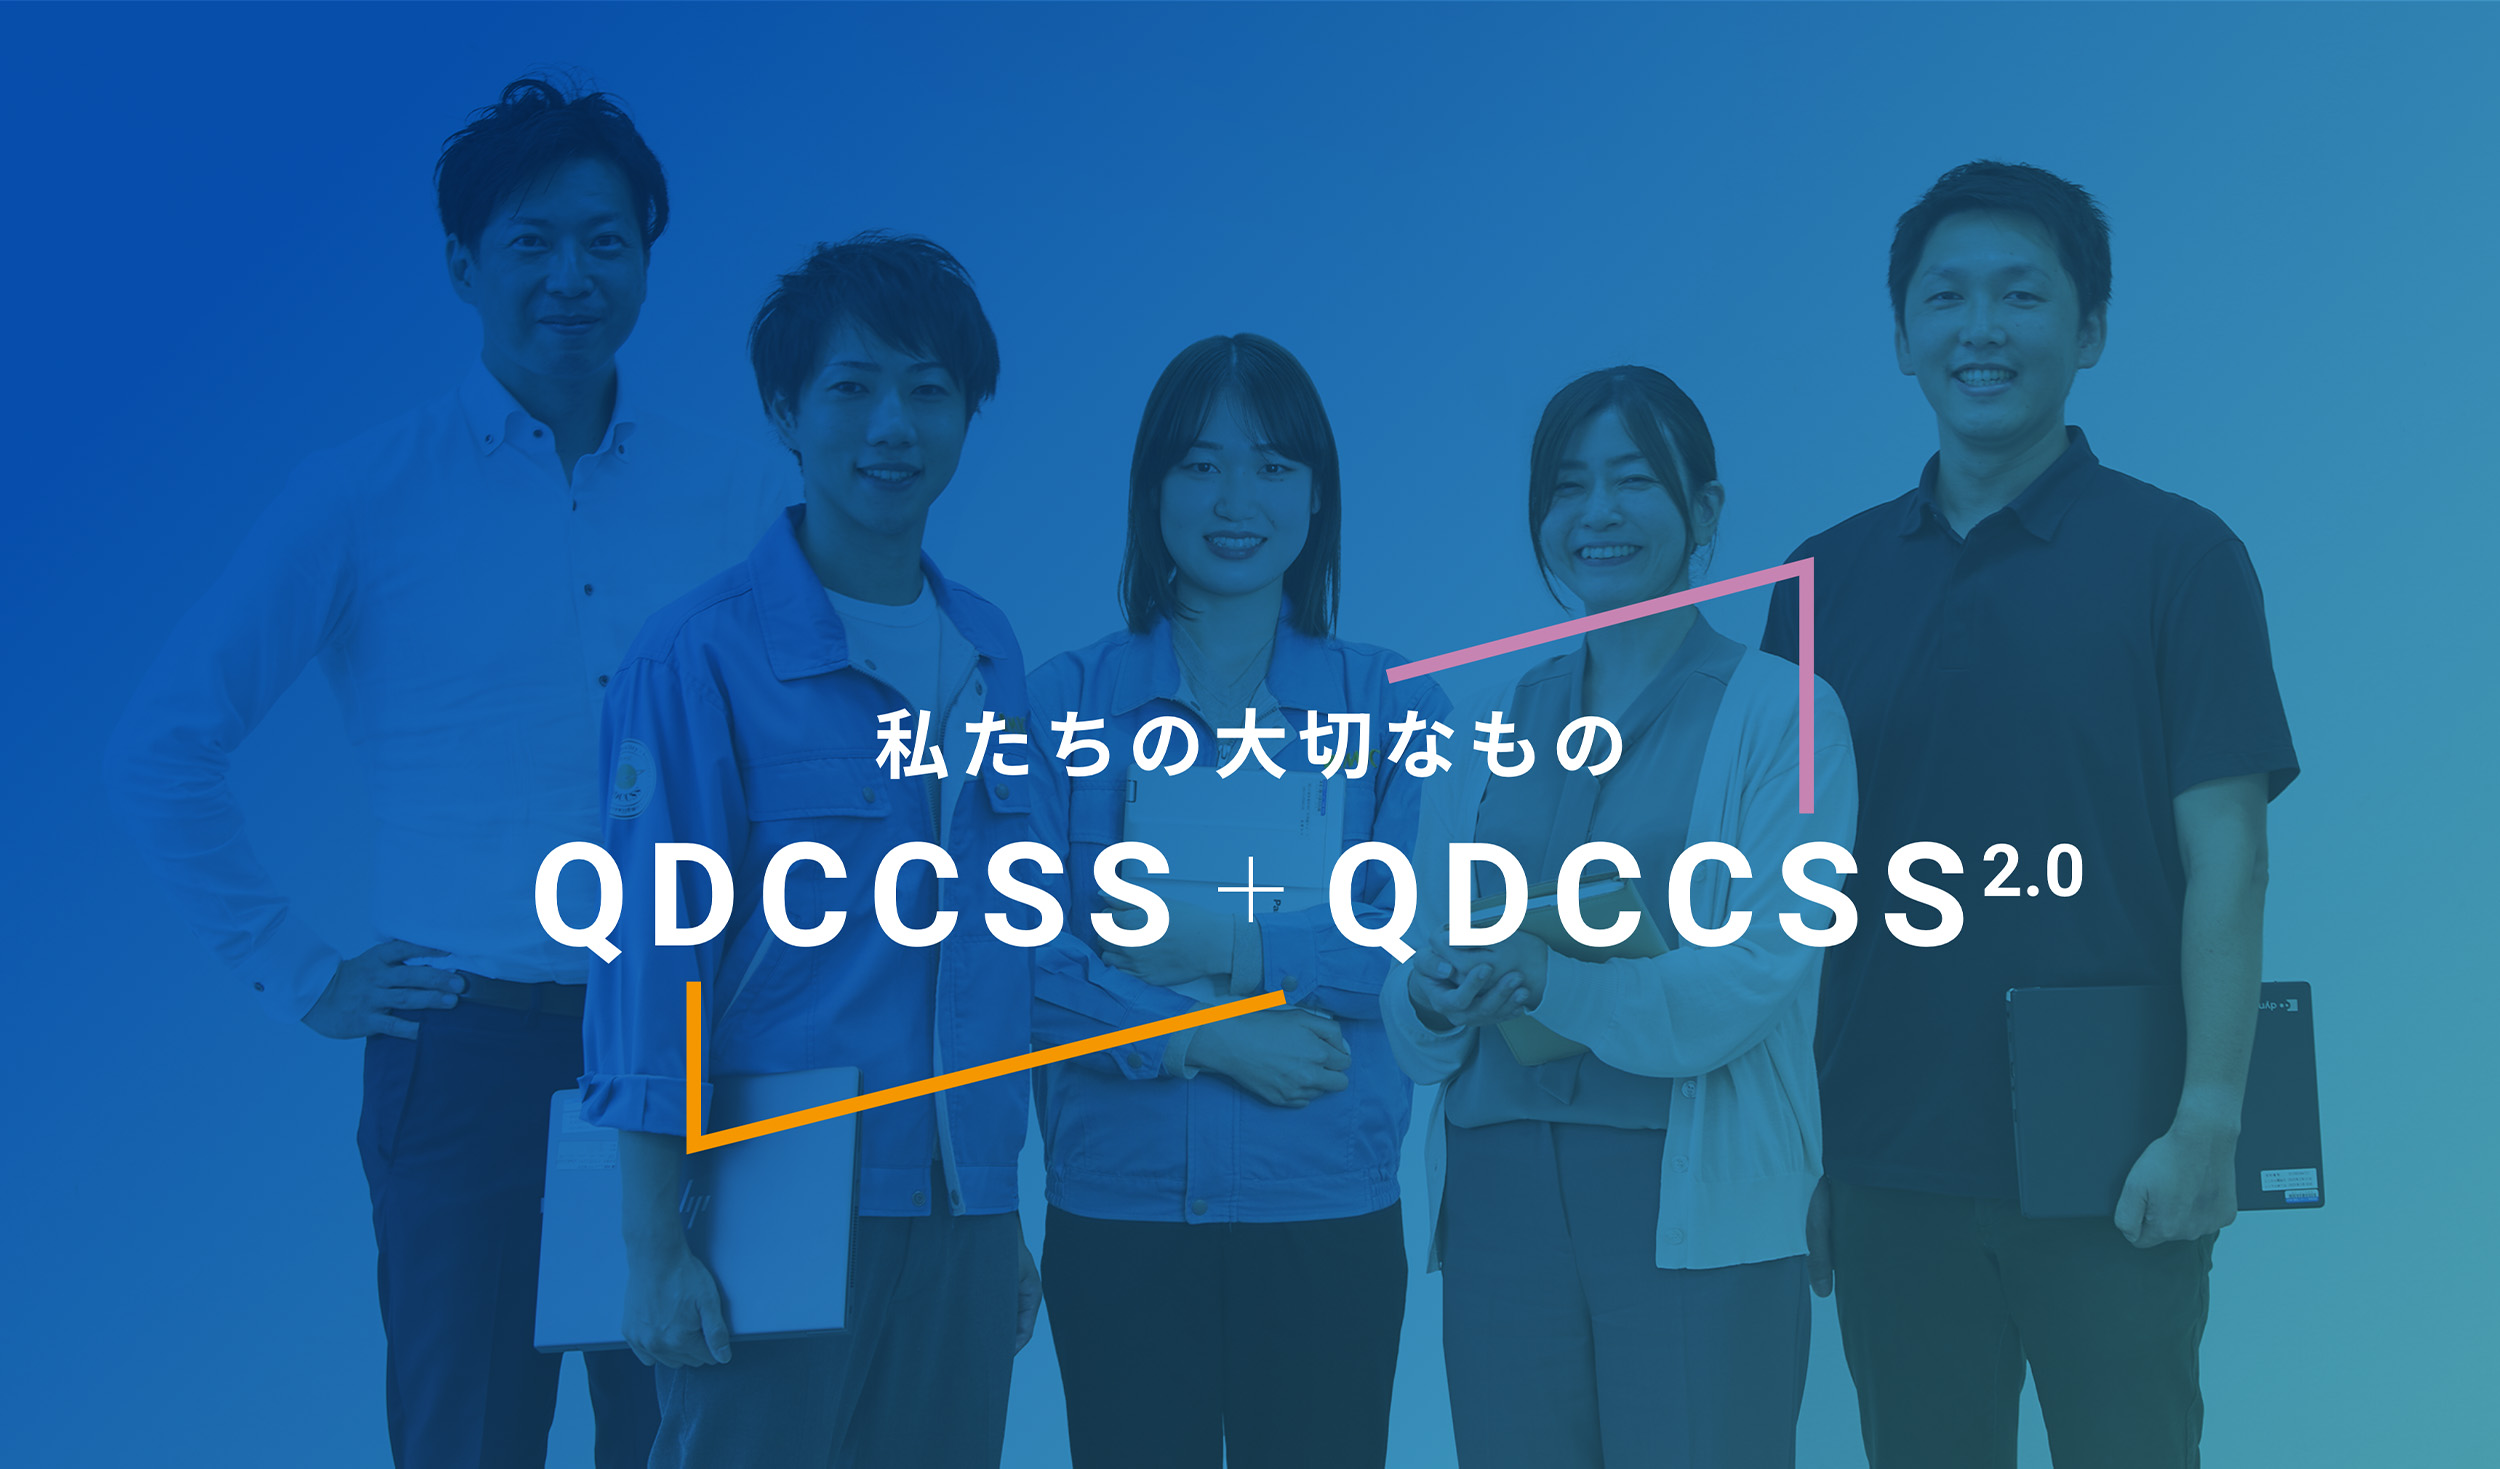 私達の大切なもの QDCCSS+QDCCSS2.0